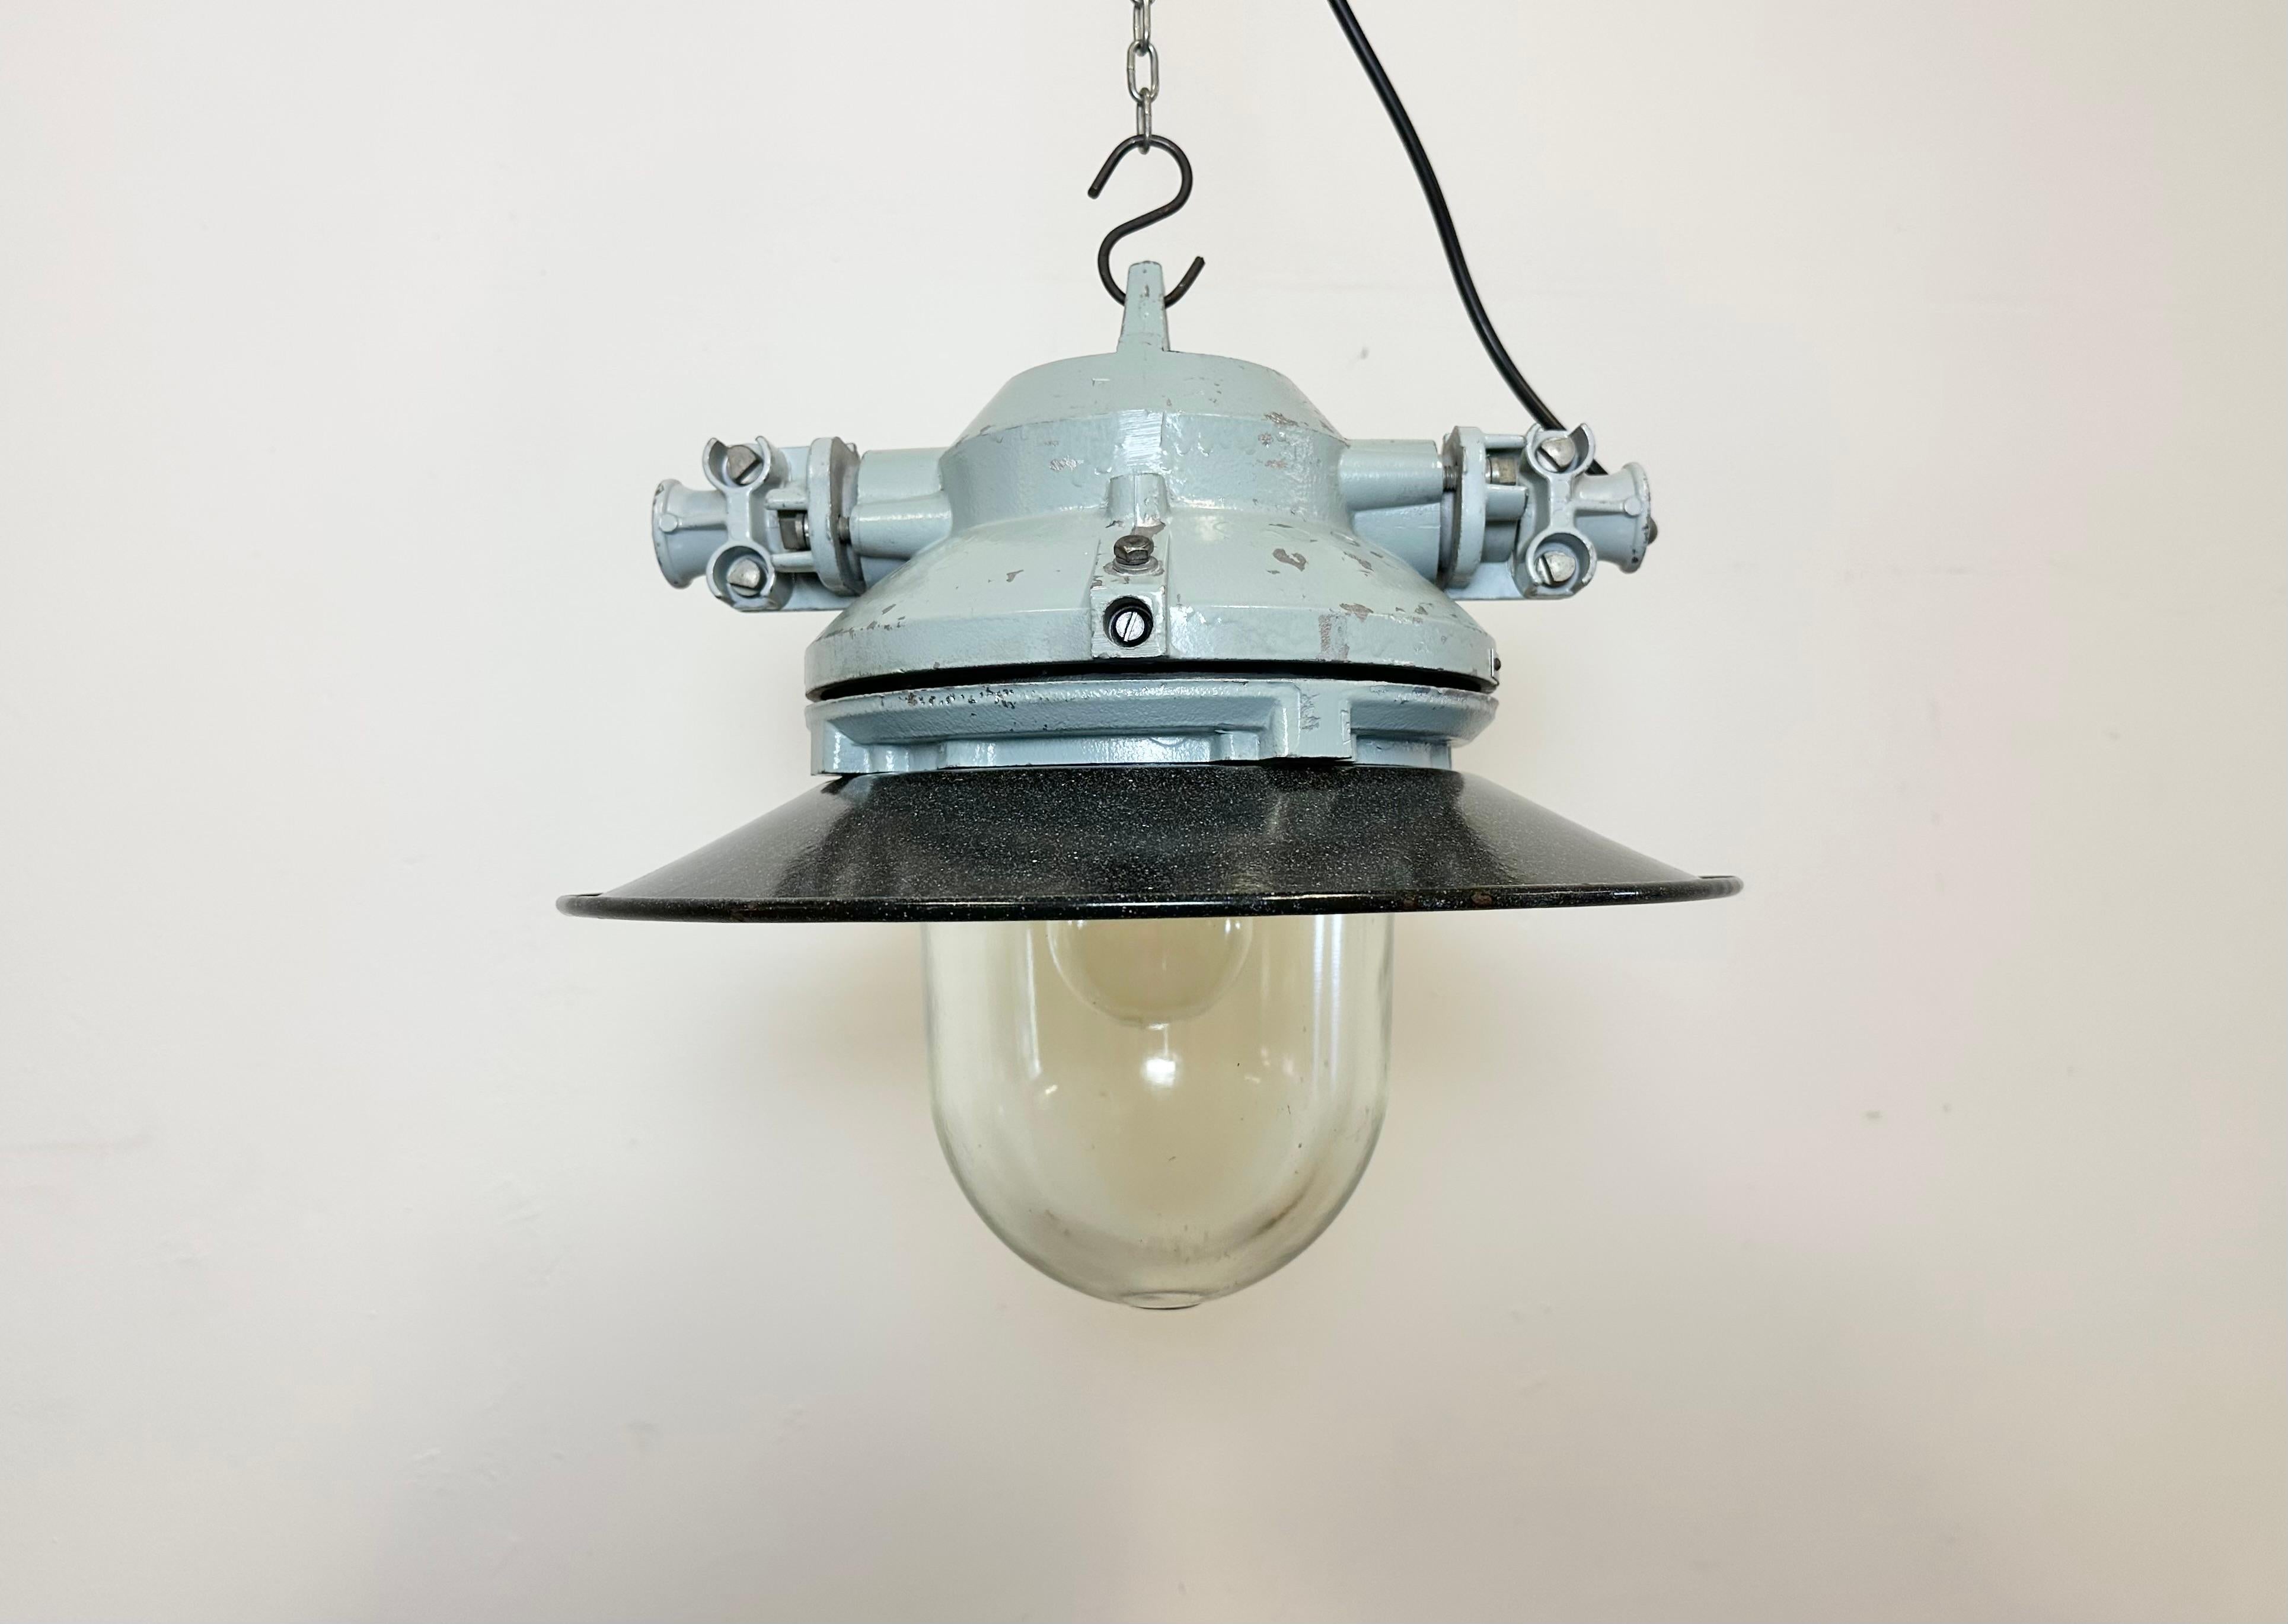 Graue Industrielampe mit massivem Schutzglaskolben, hergestellt von Elektrosvit in der ehemaligen Tschechoslowakei in den 1970er Jahren, mit einem grauen Aluminiumgusskörper, klarem Glas und einem grau emaillierten Schirm mit weißer Innenseite.